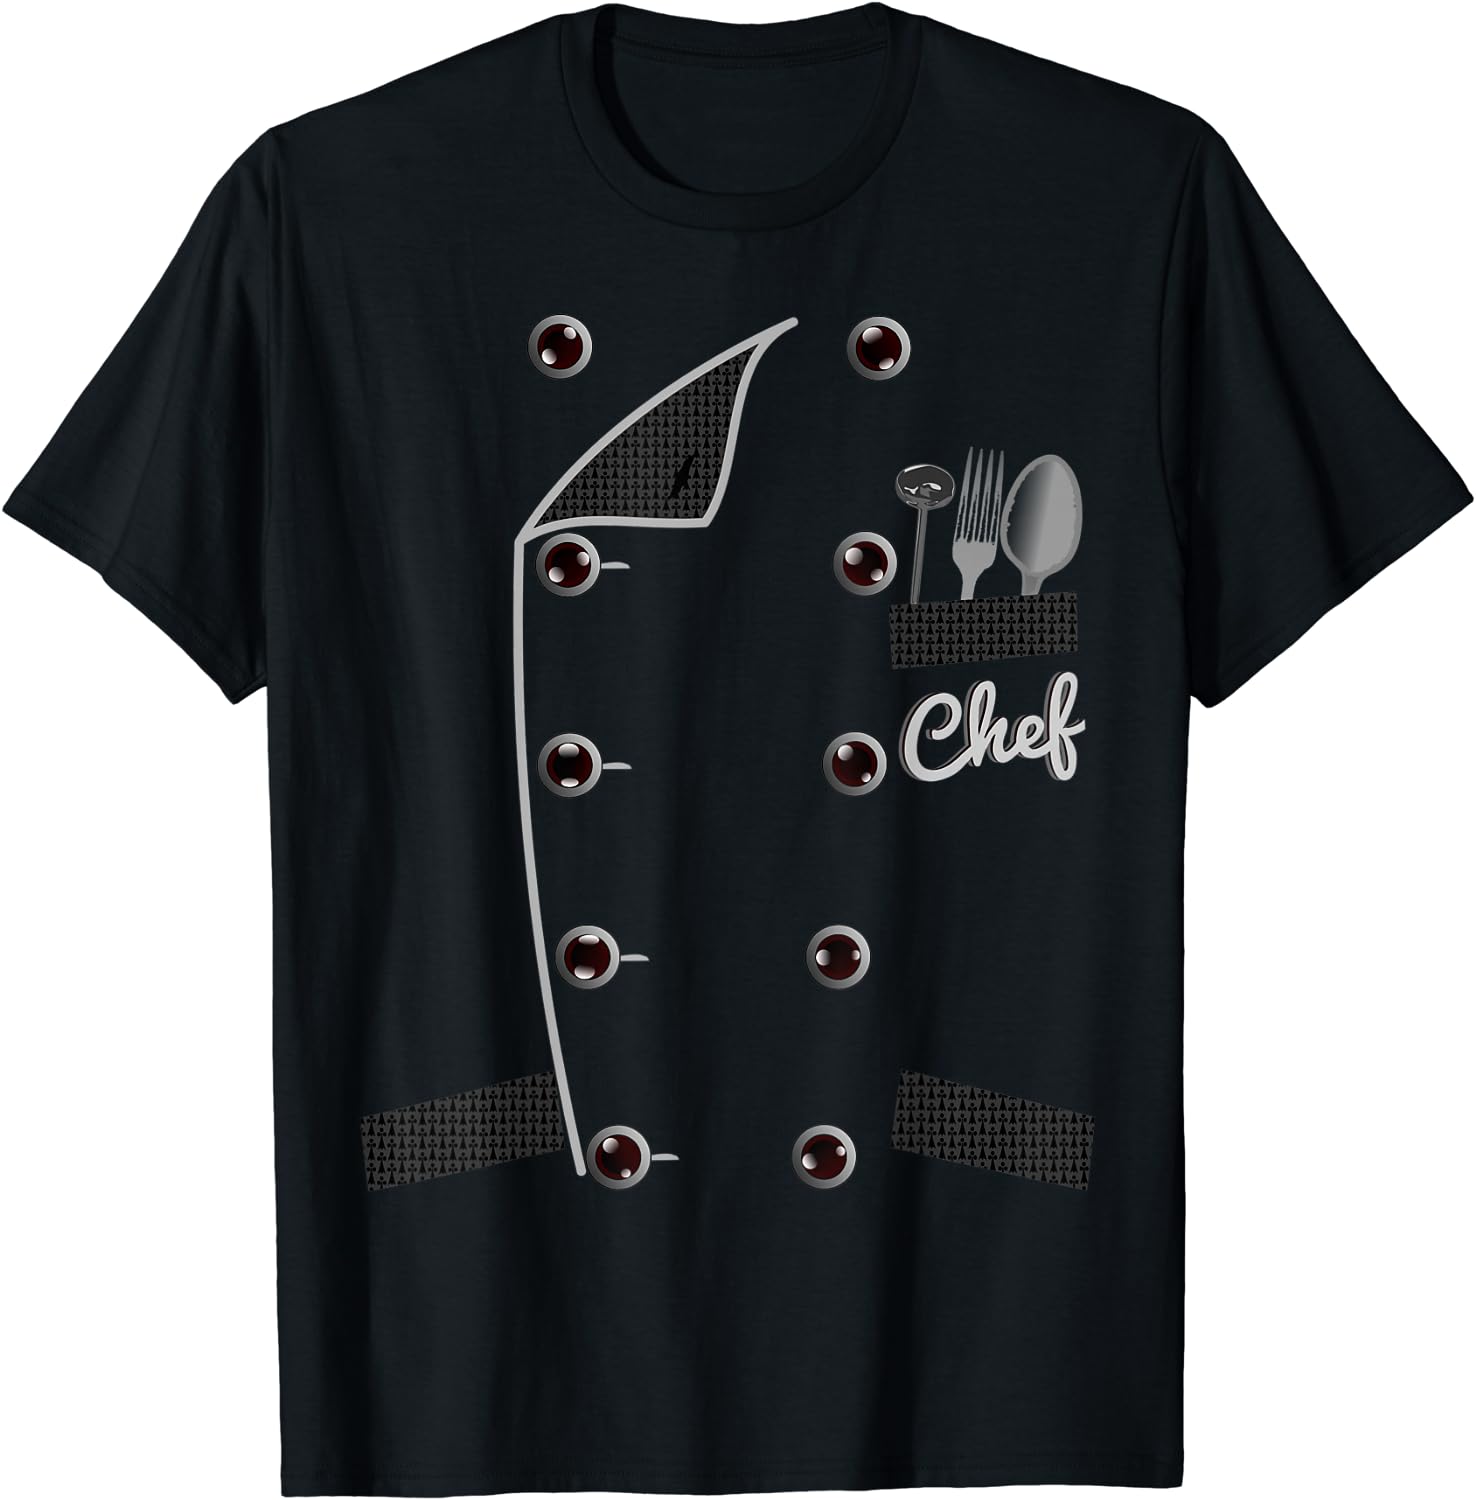 Discover Maglietta T-Shirt Cuoco Cucina Per Uomo Donna Bambini - Giacca Cuoco